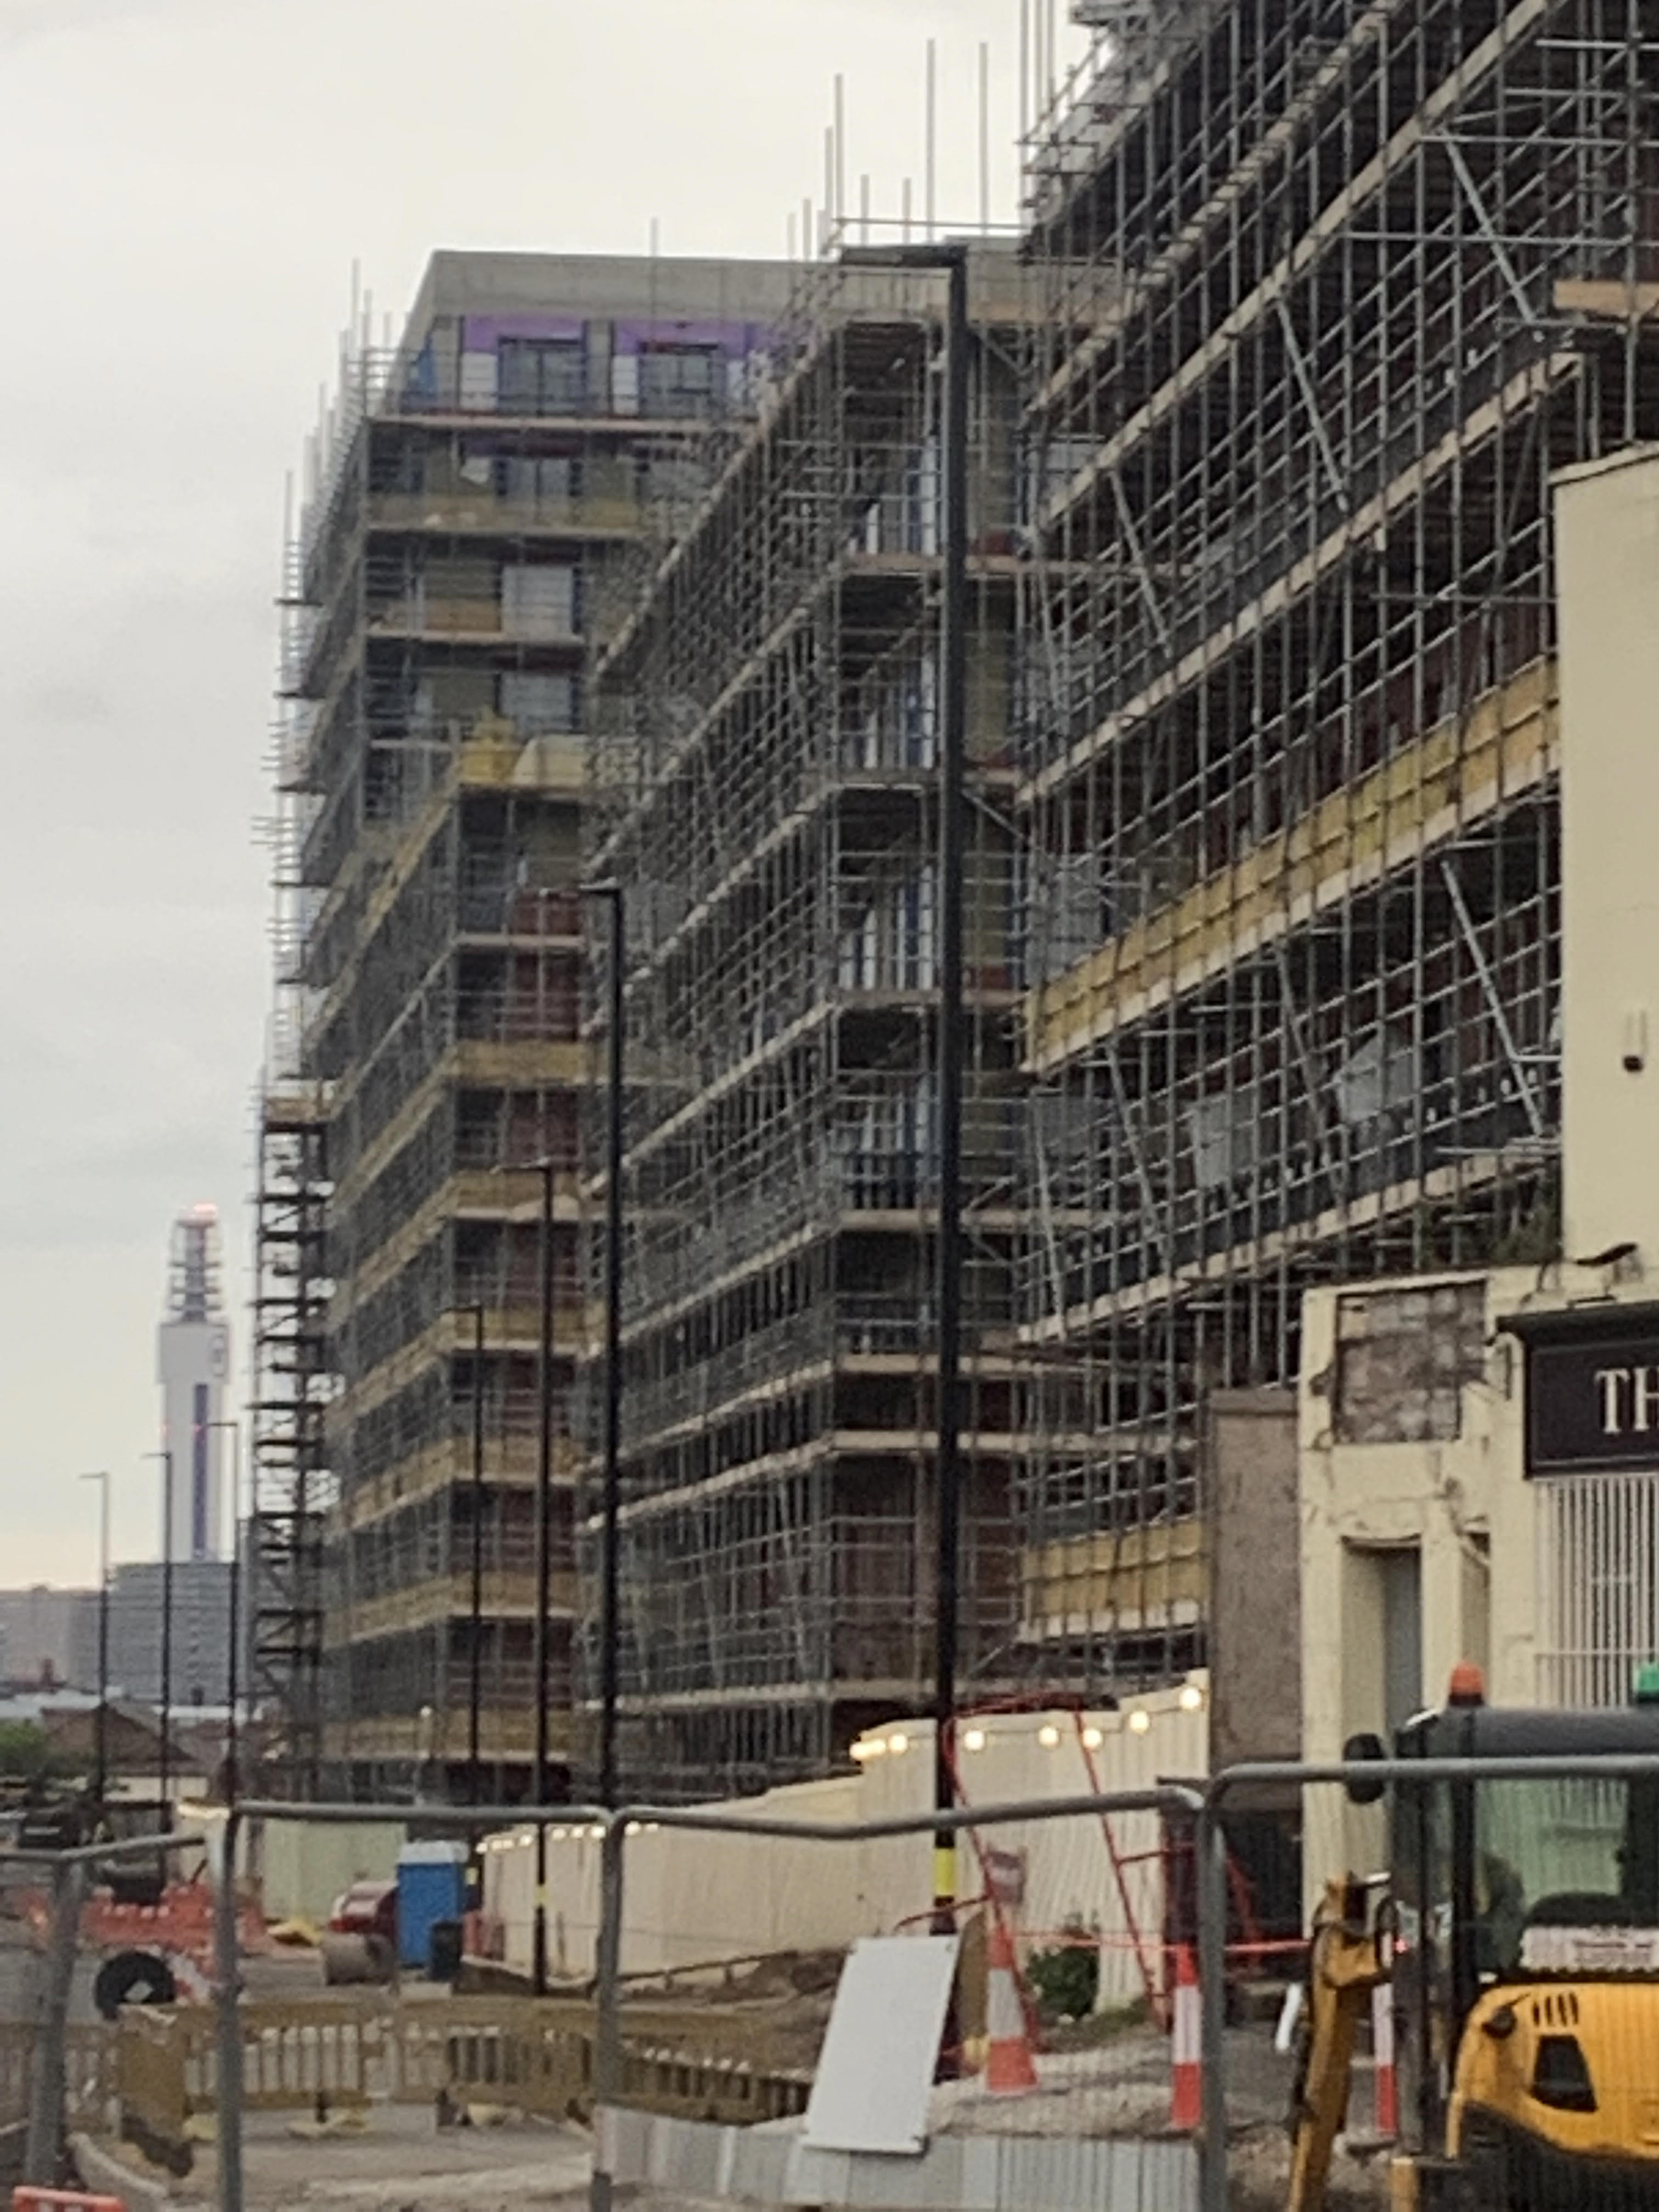 Building contractors in the West Midlands